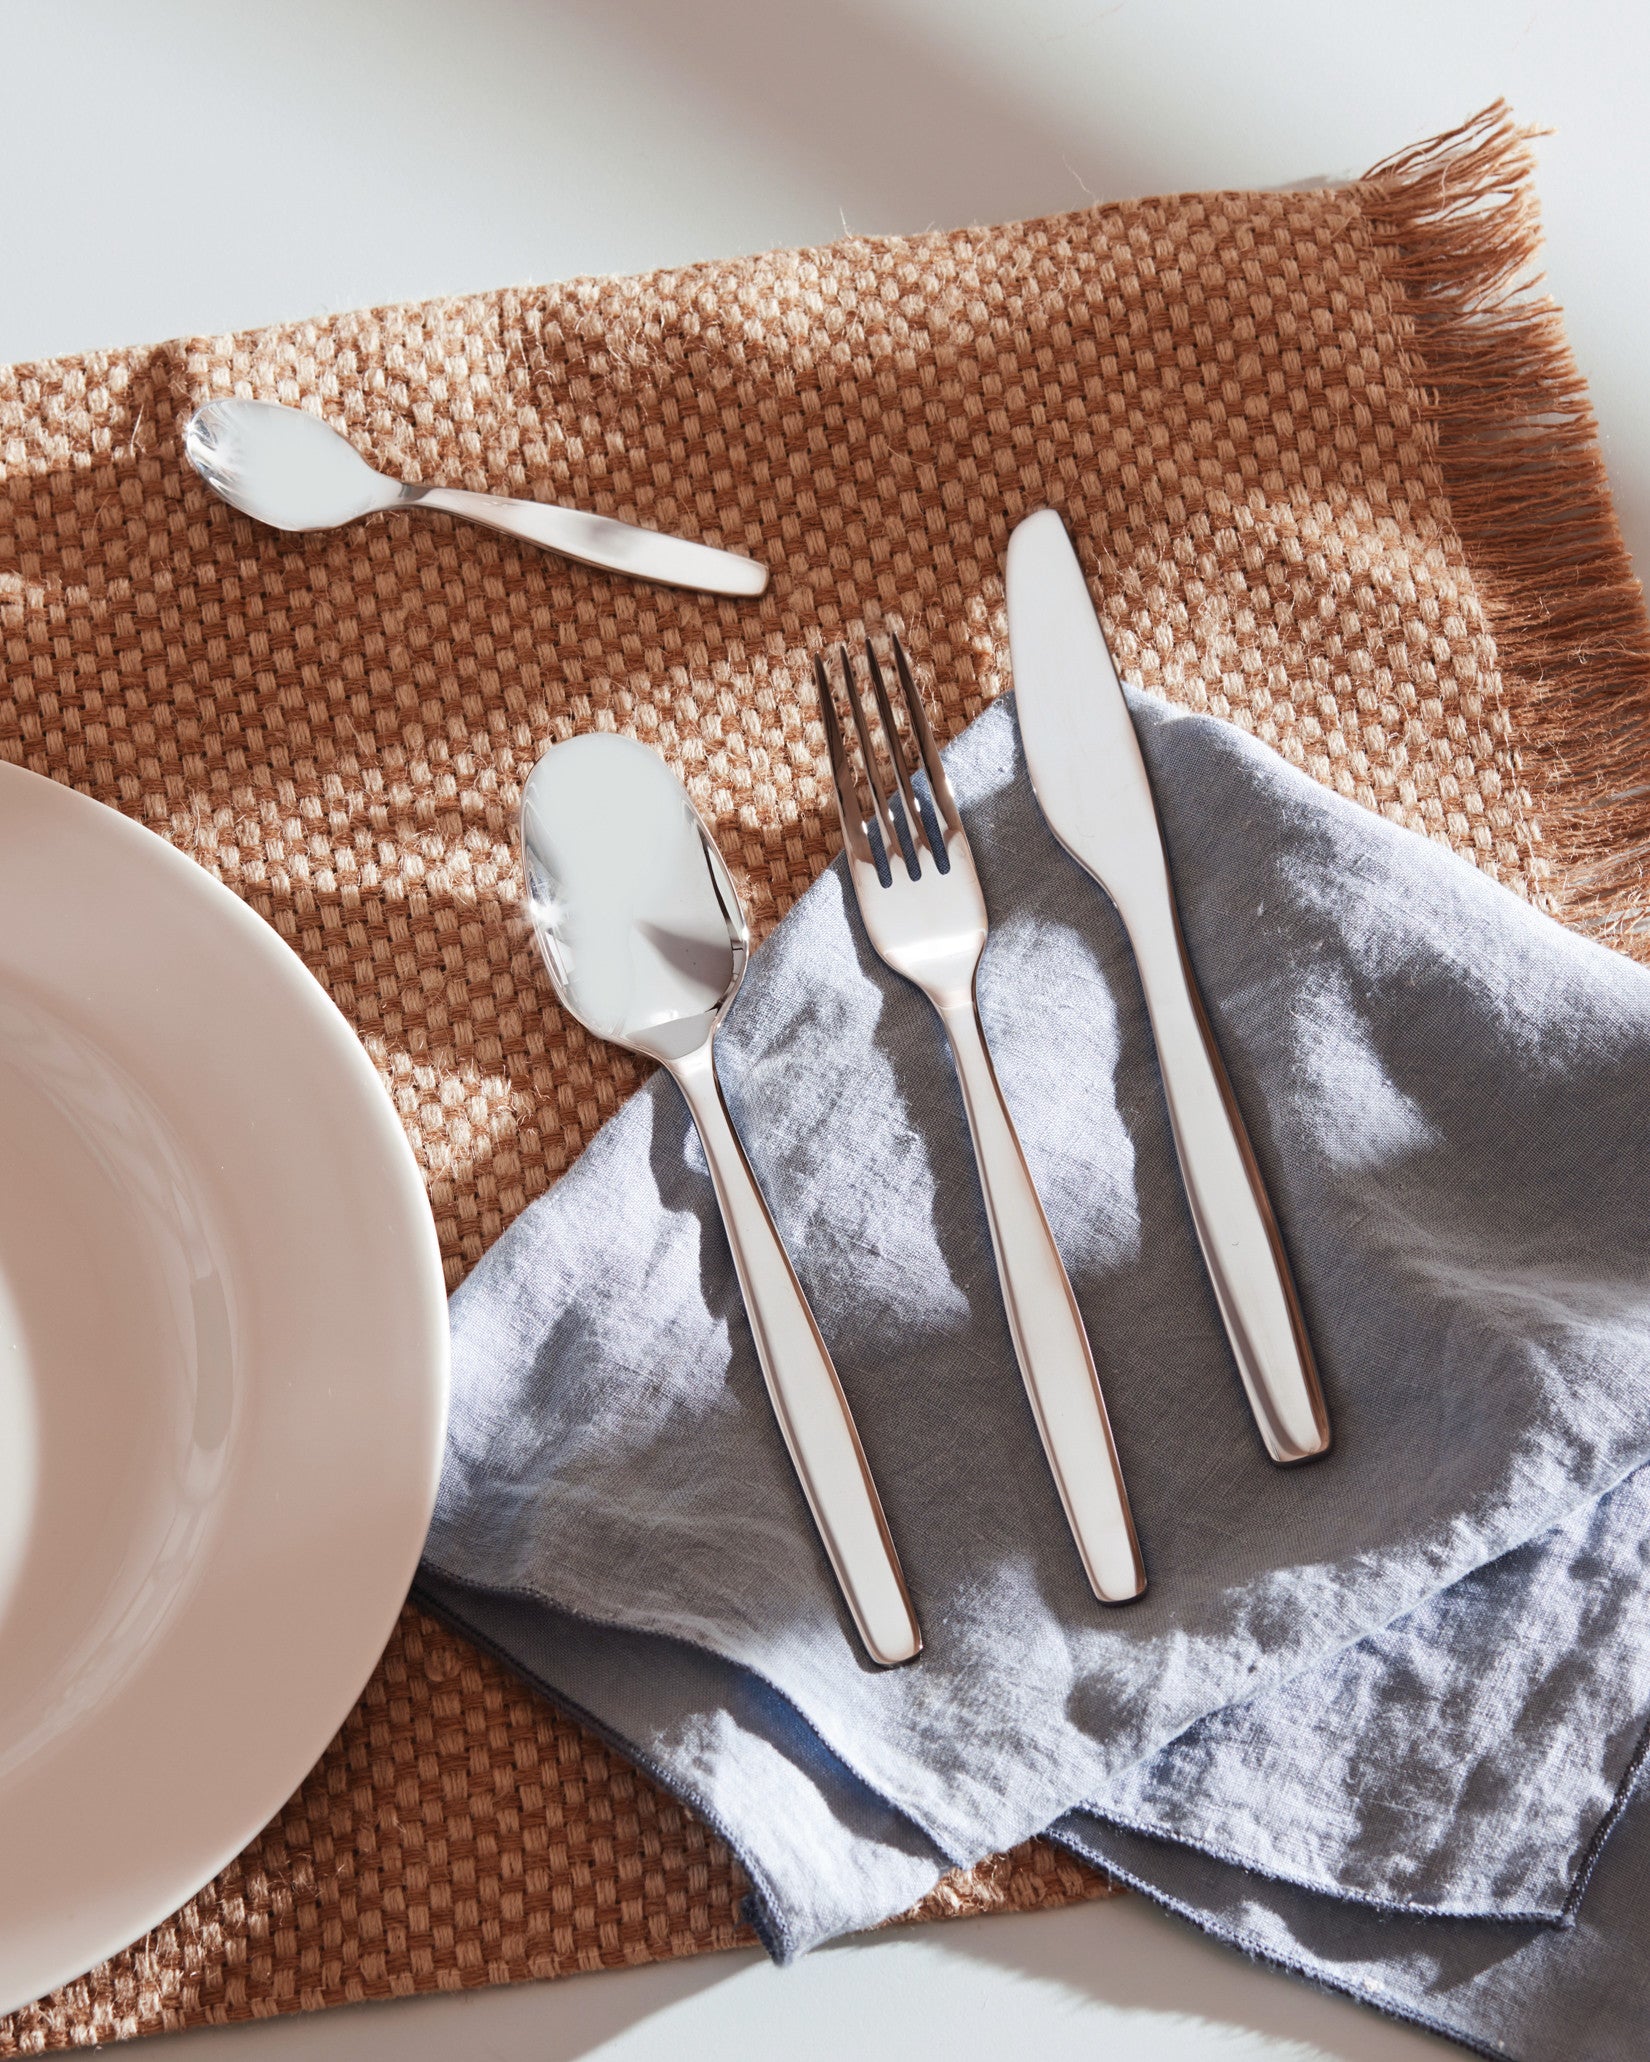 Alessi Kitchen Cutlery Set